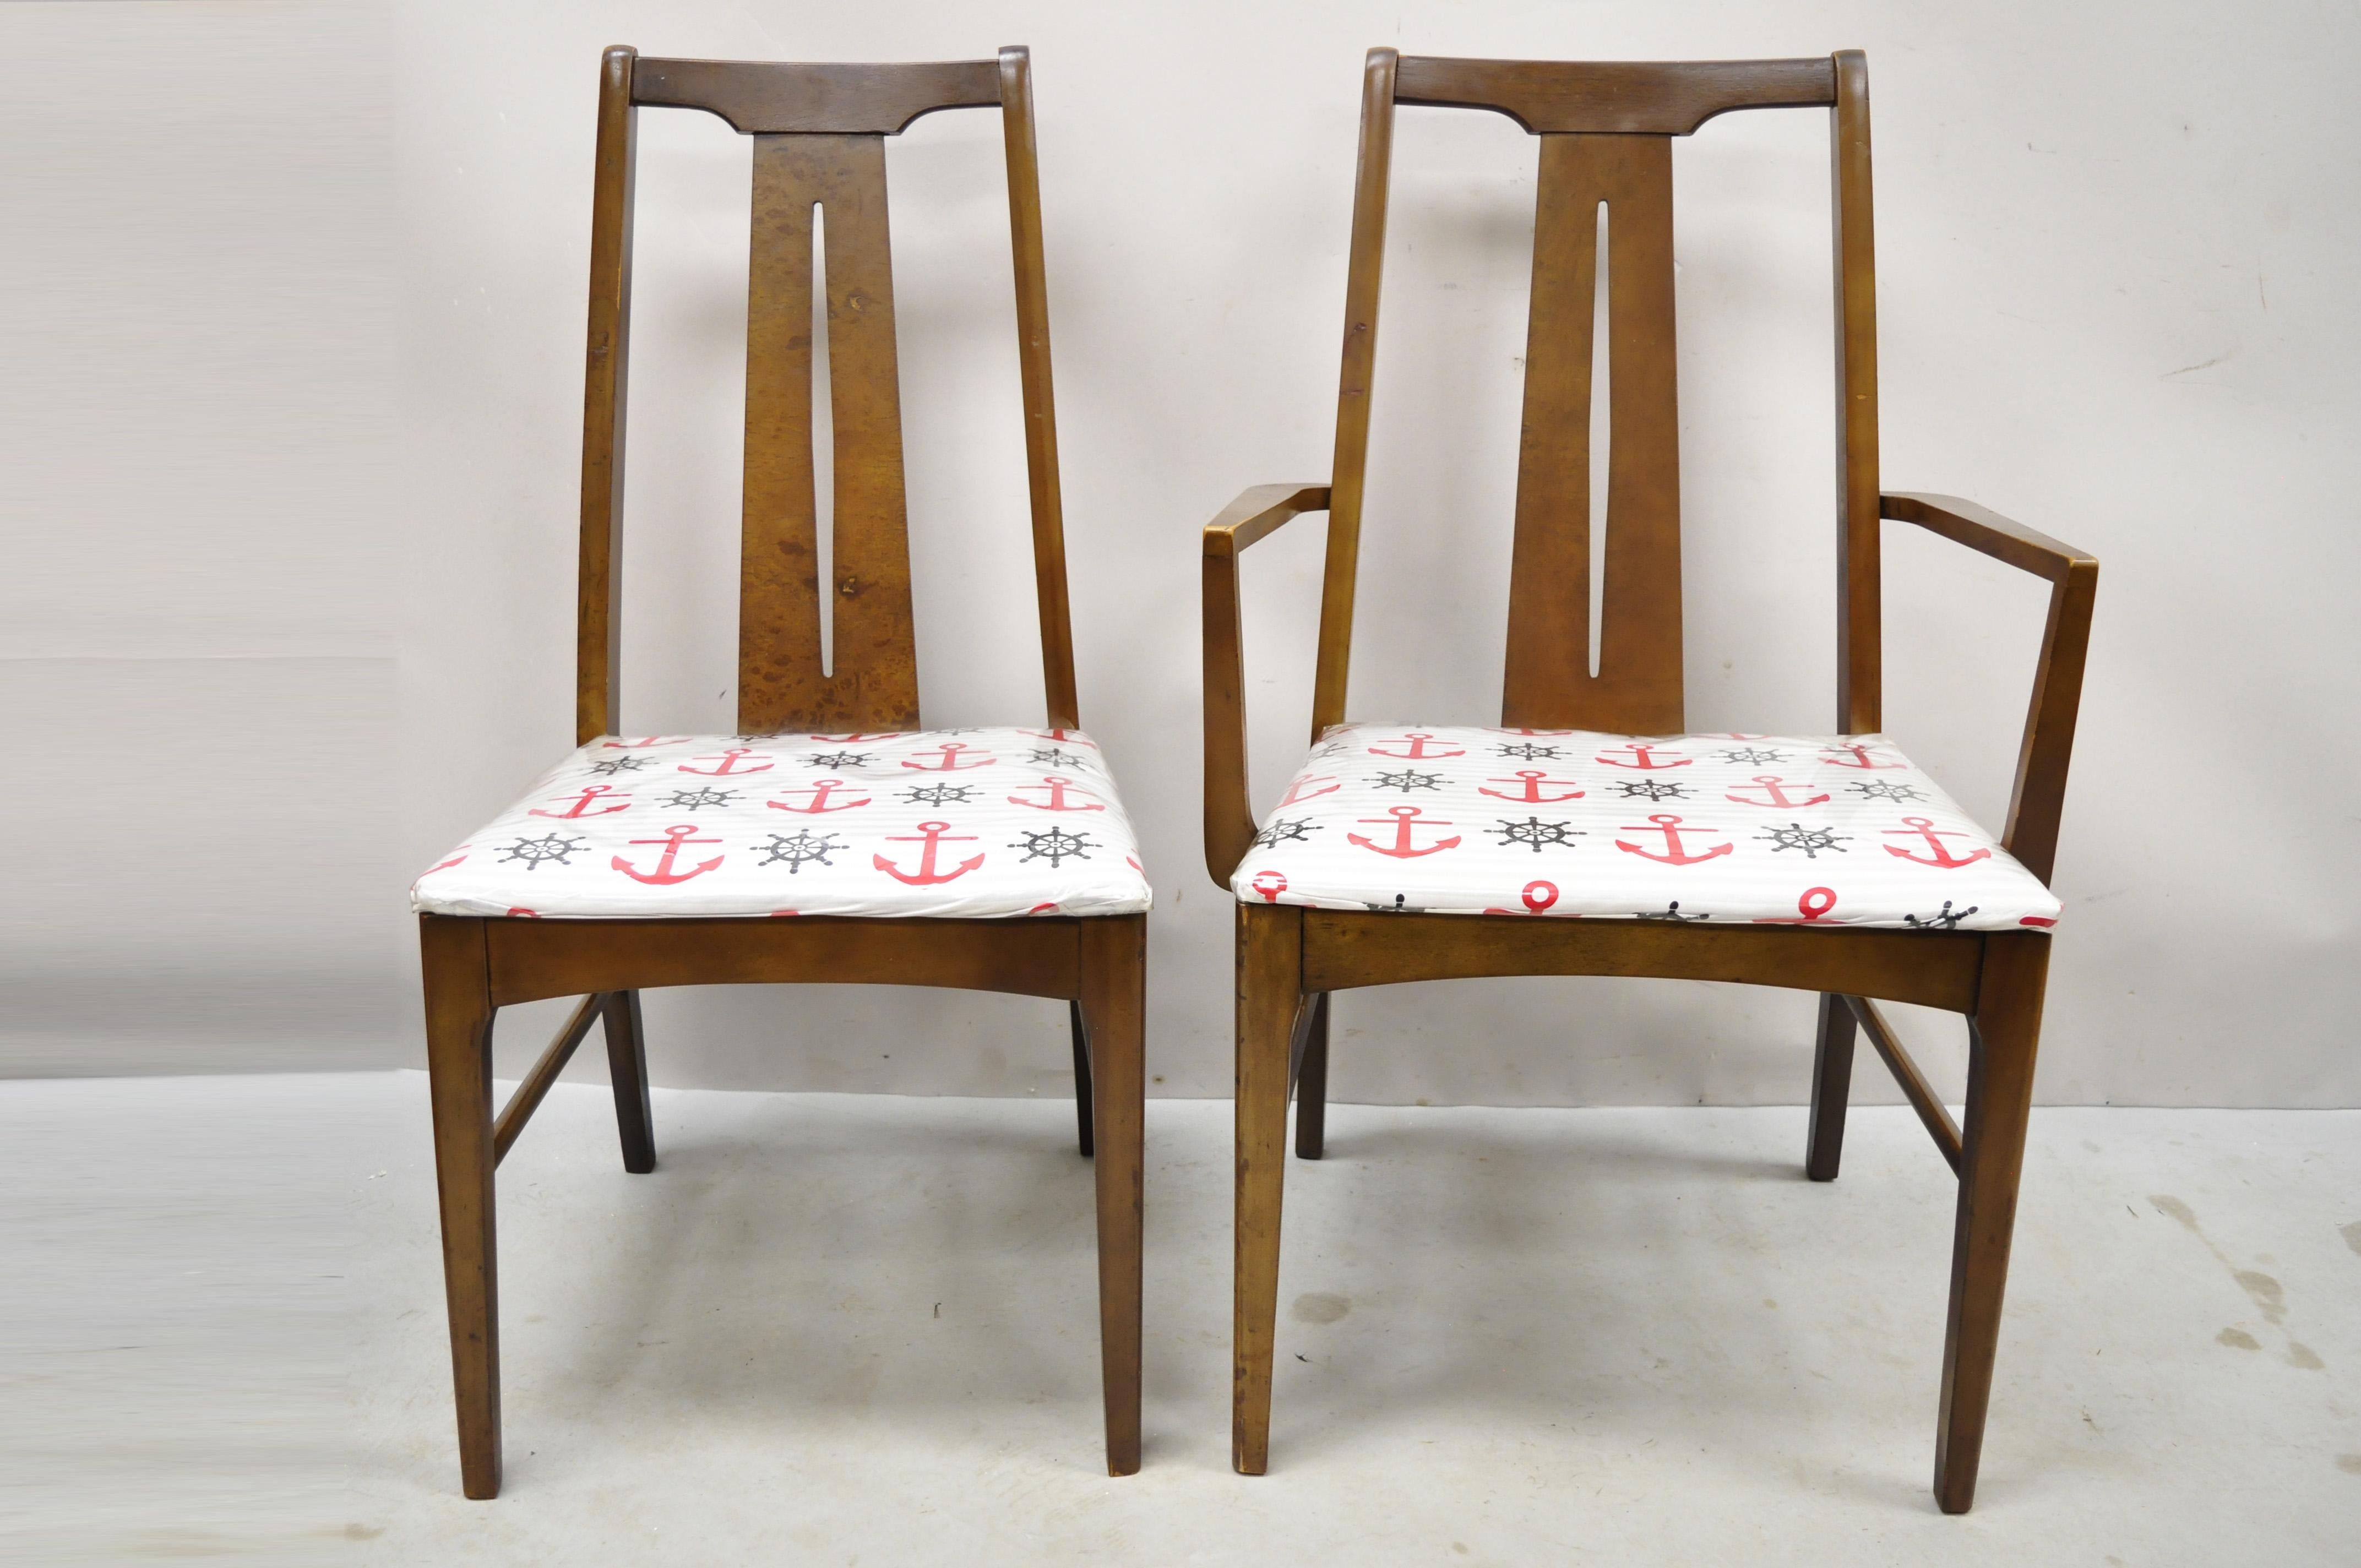 Vintage Mid Century Modern Walnuss Esszimmer Stühle - Set von 6. Listing umfasst (2) Arm Stühle, (4) Seite Stühle, schöne Holzmaserung, verjüngte Beine, sehr schöne Vintage-Set, saubere modernistische Linien. Etwa Mitte des 20.